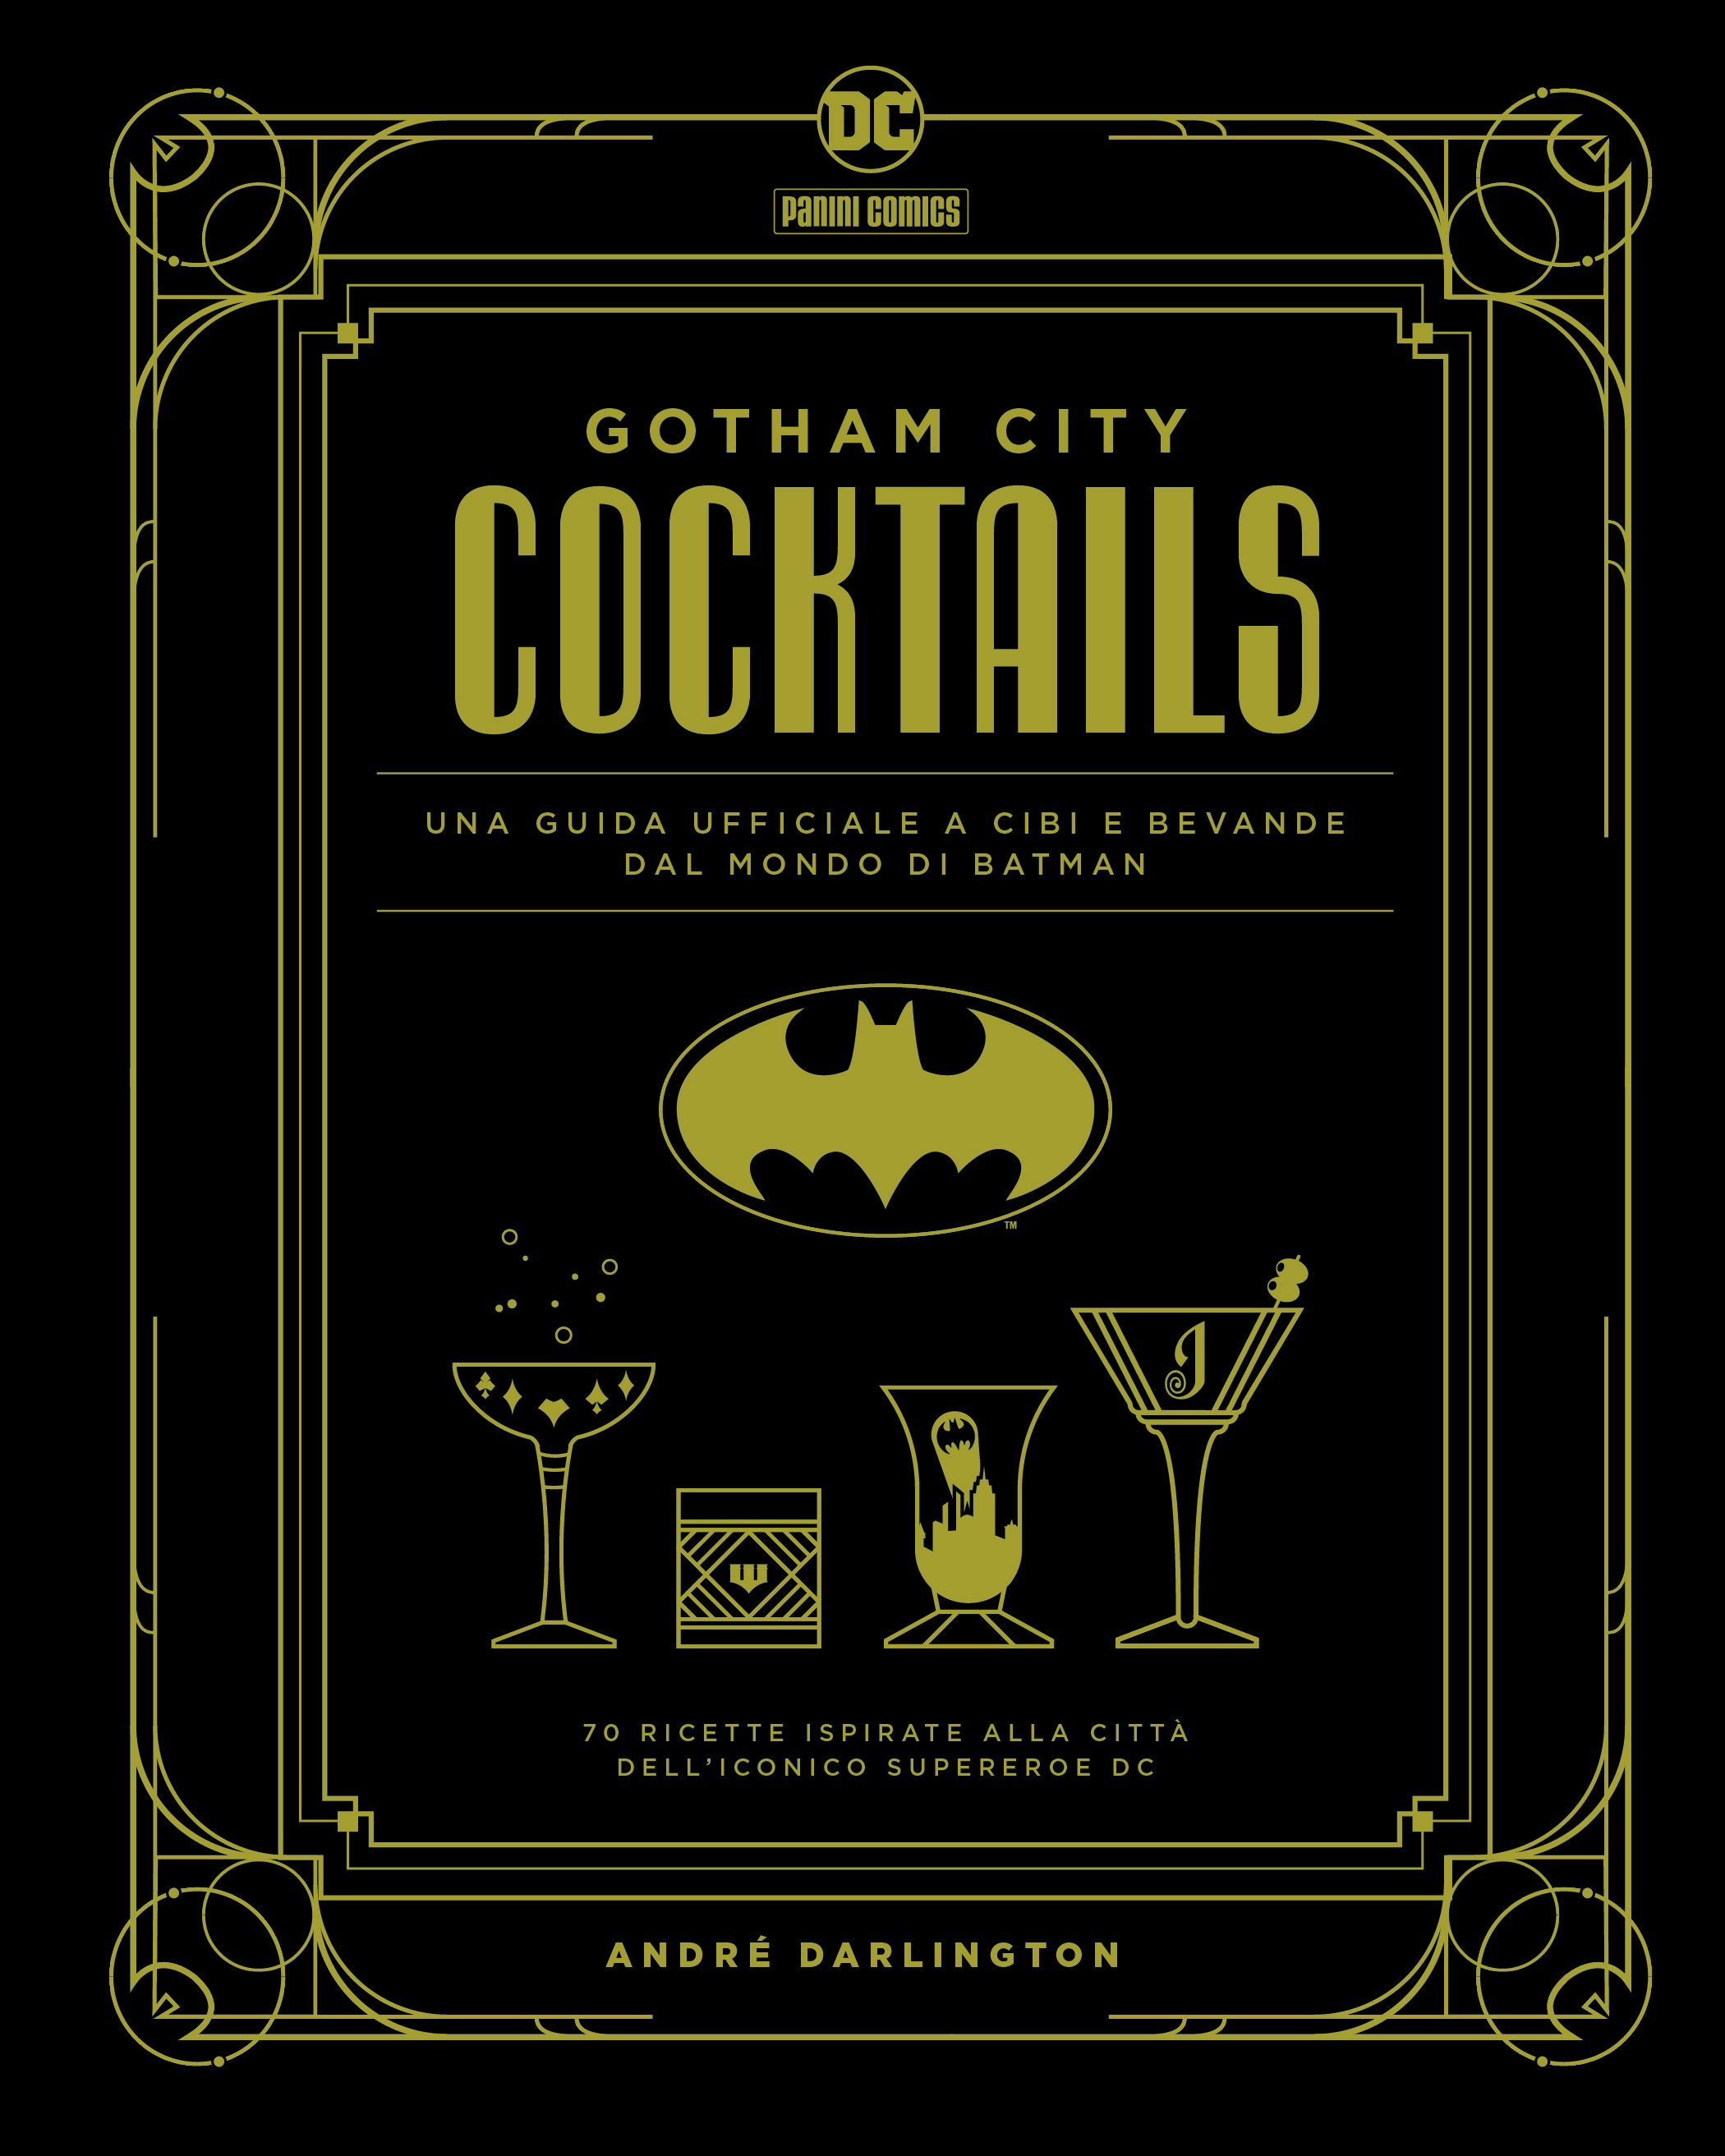 Panini Comics, esce Gotham City Cocktails con 70 ricette ispirate al mondo di Batman